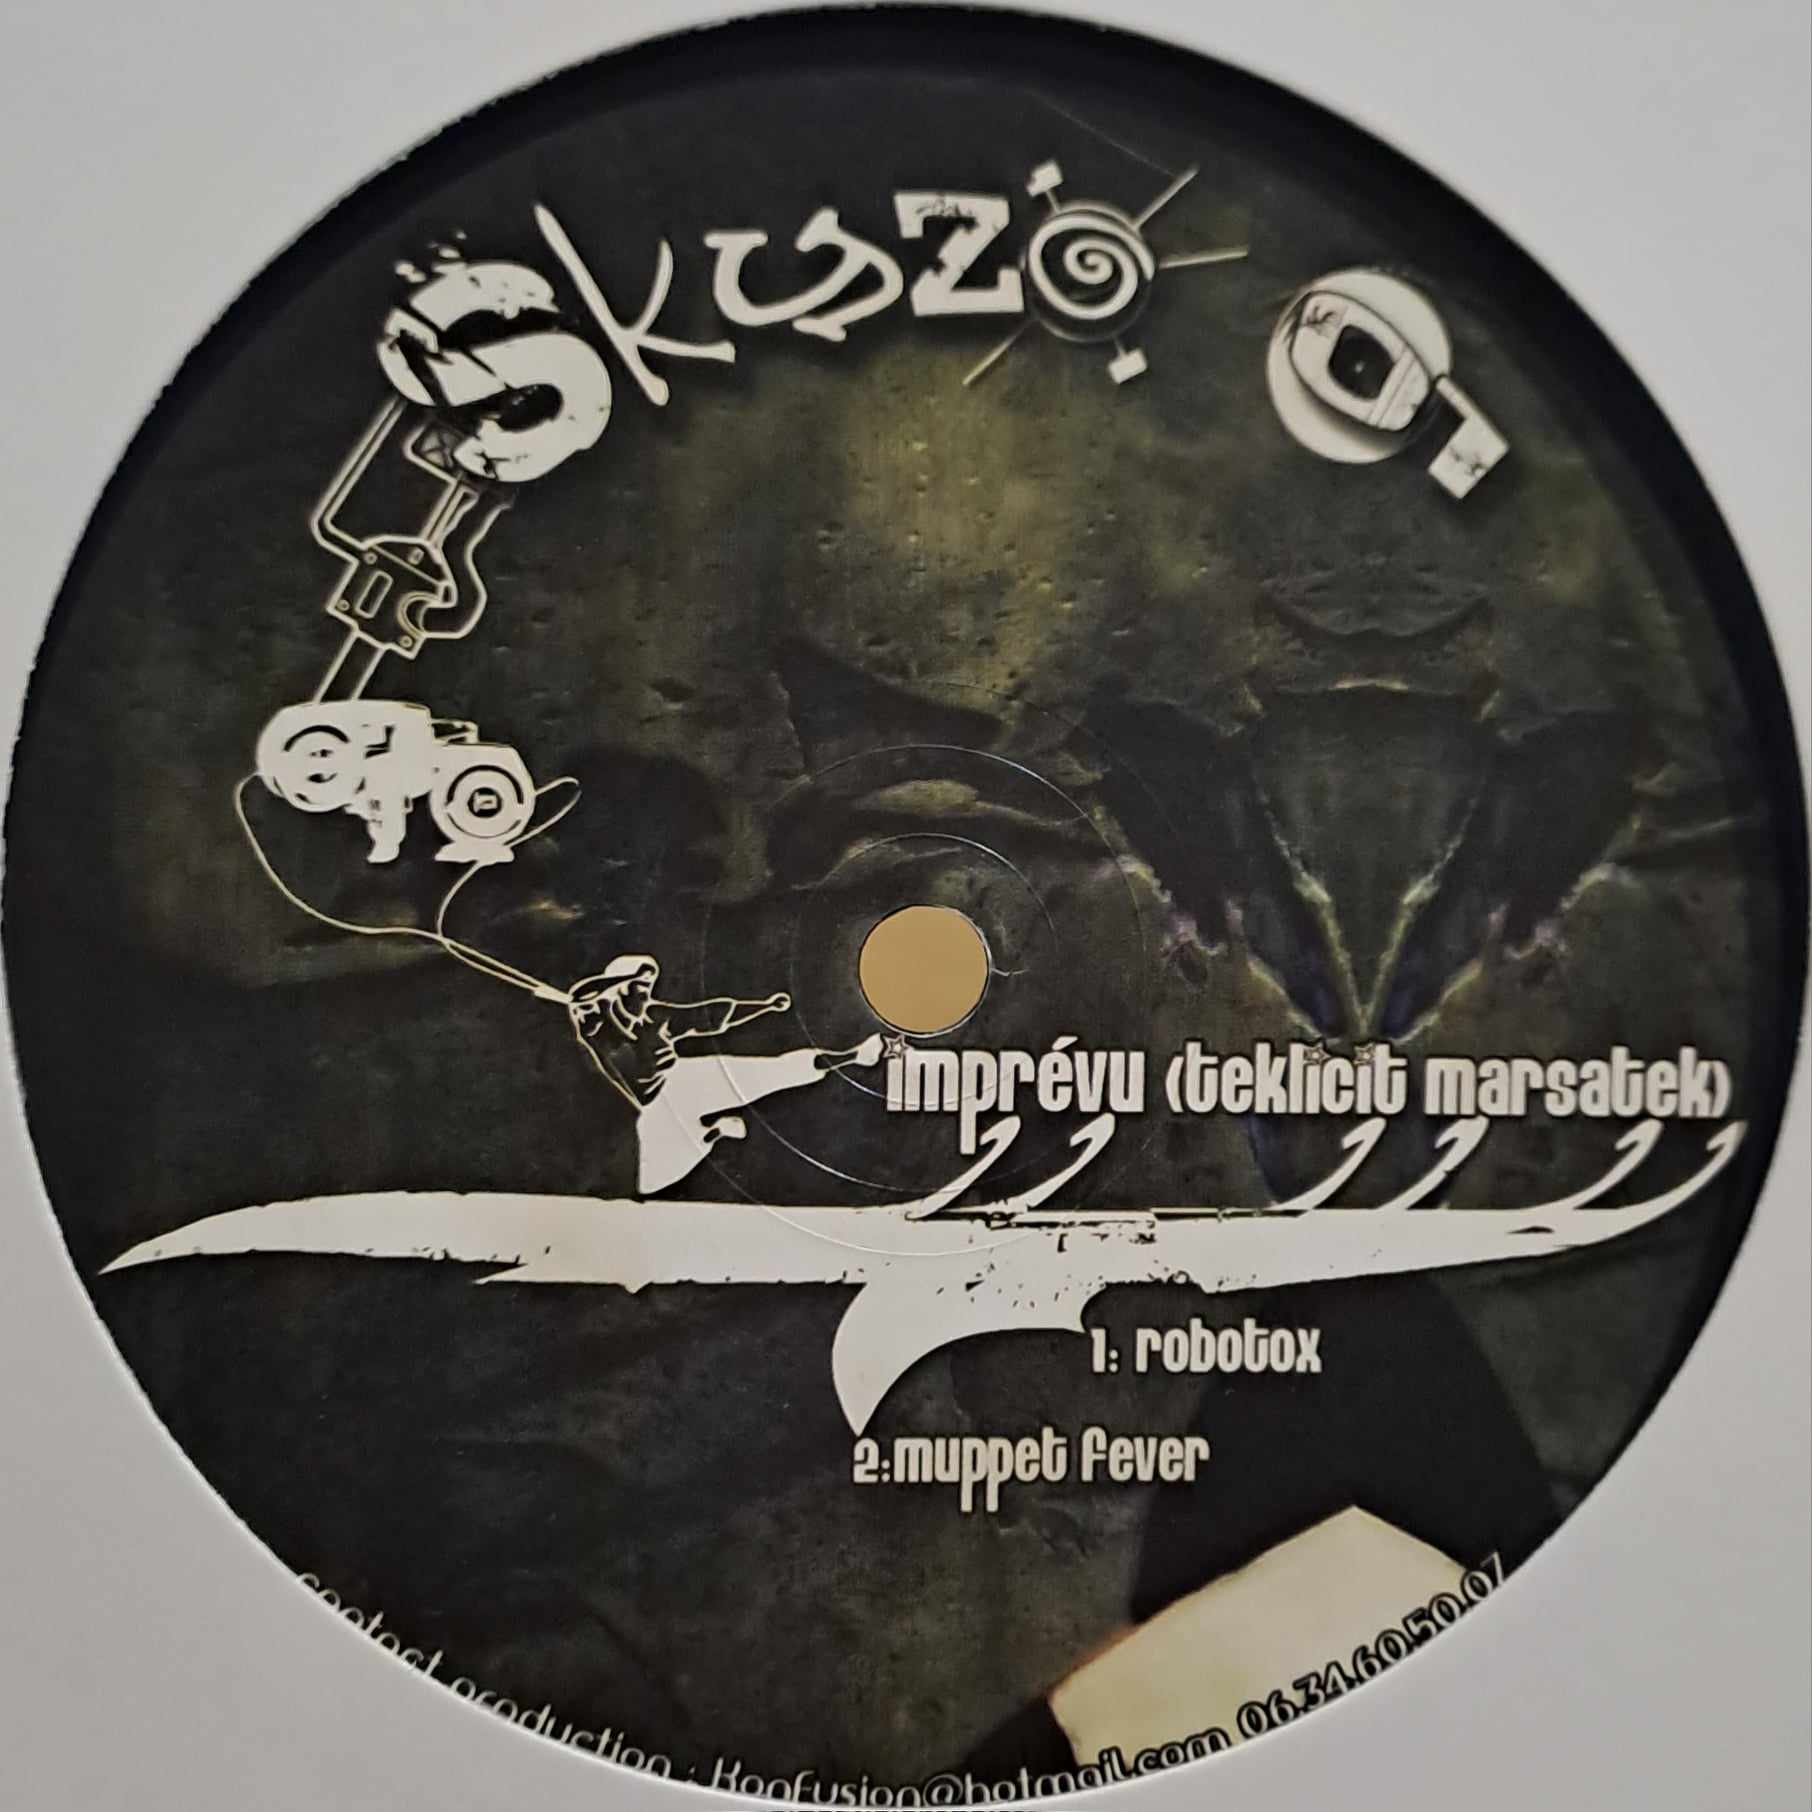 Skyzo 01 - vinyle tribecore